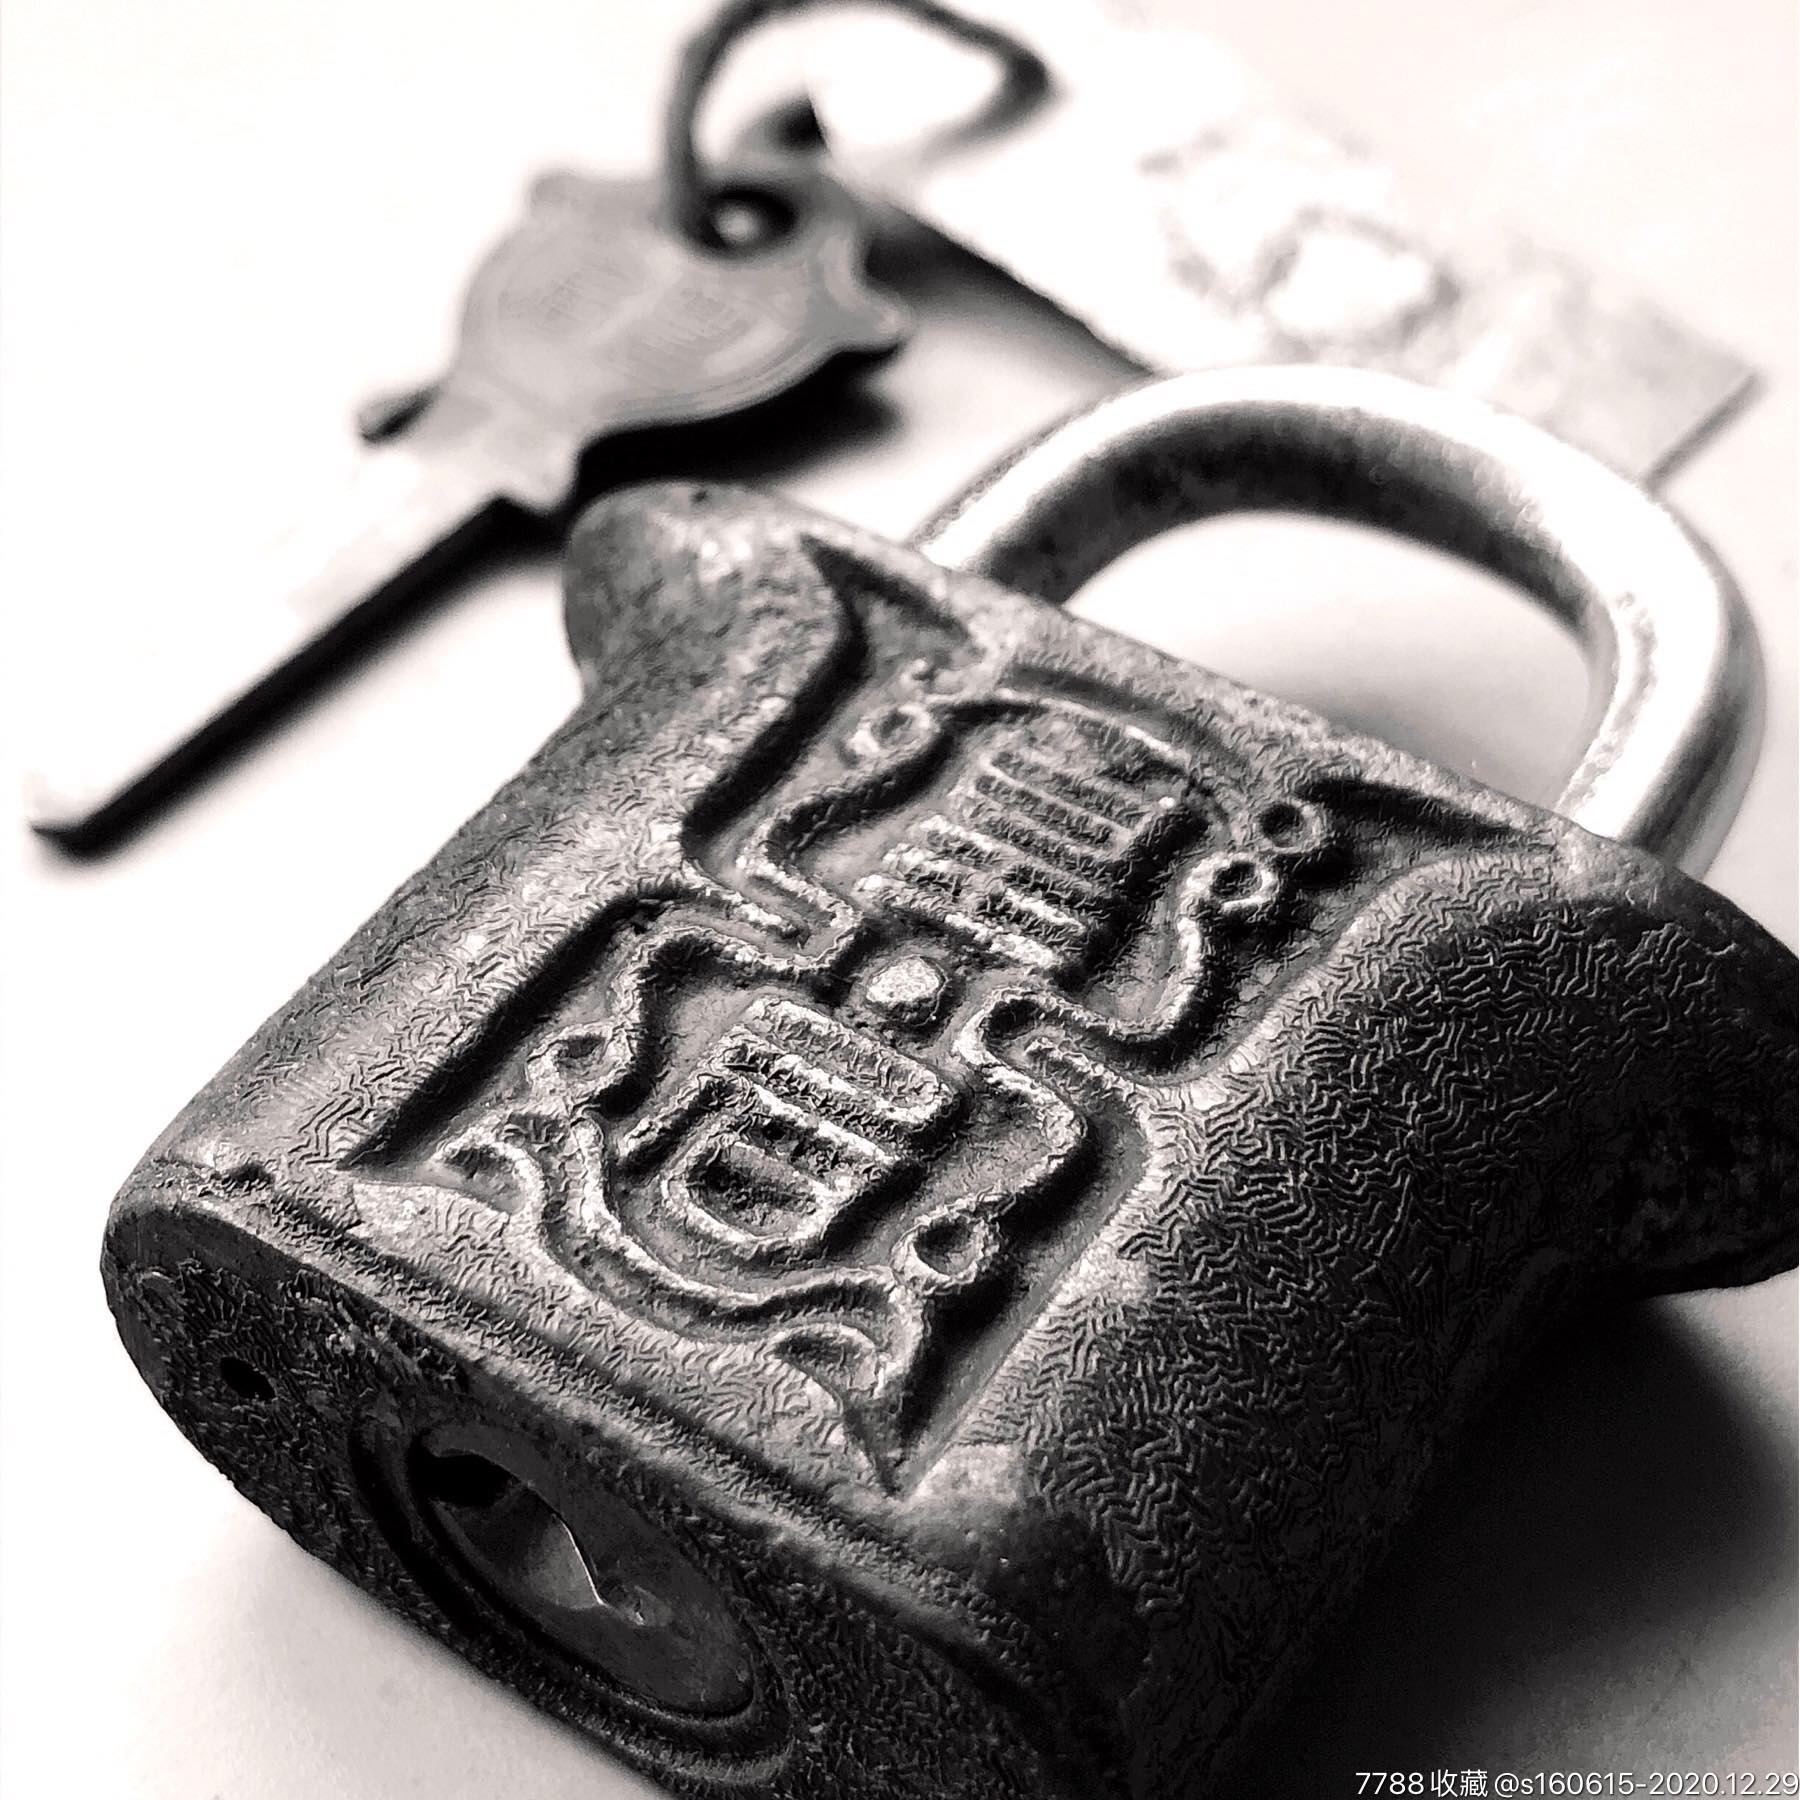 民国时期皇后牌老铁锁原配钥匙古锁收藏老铜锁具